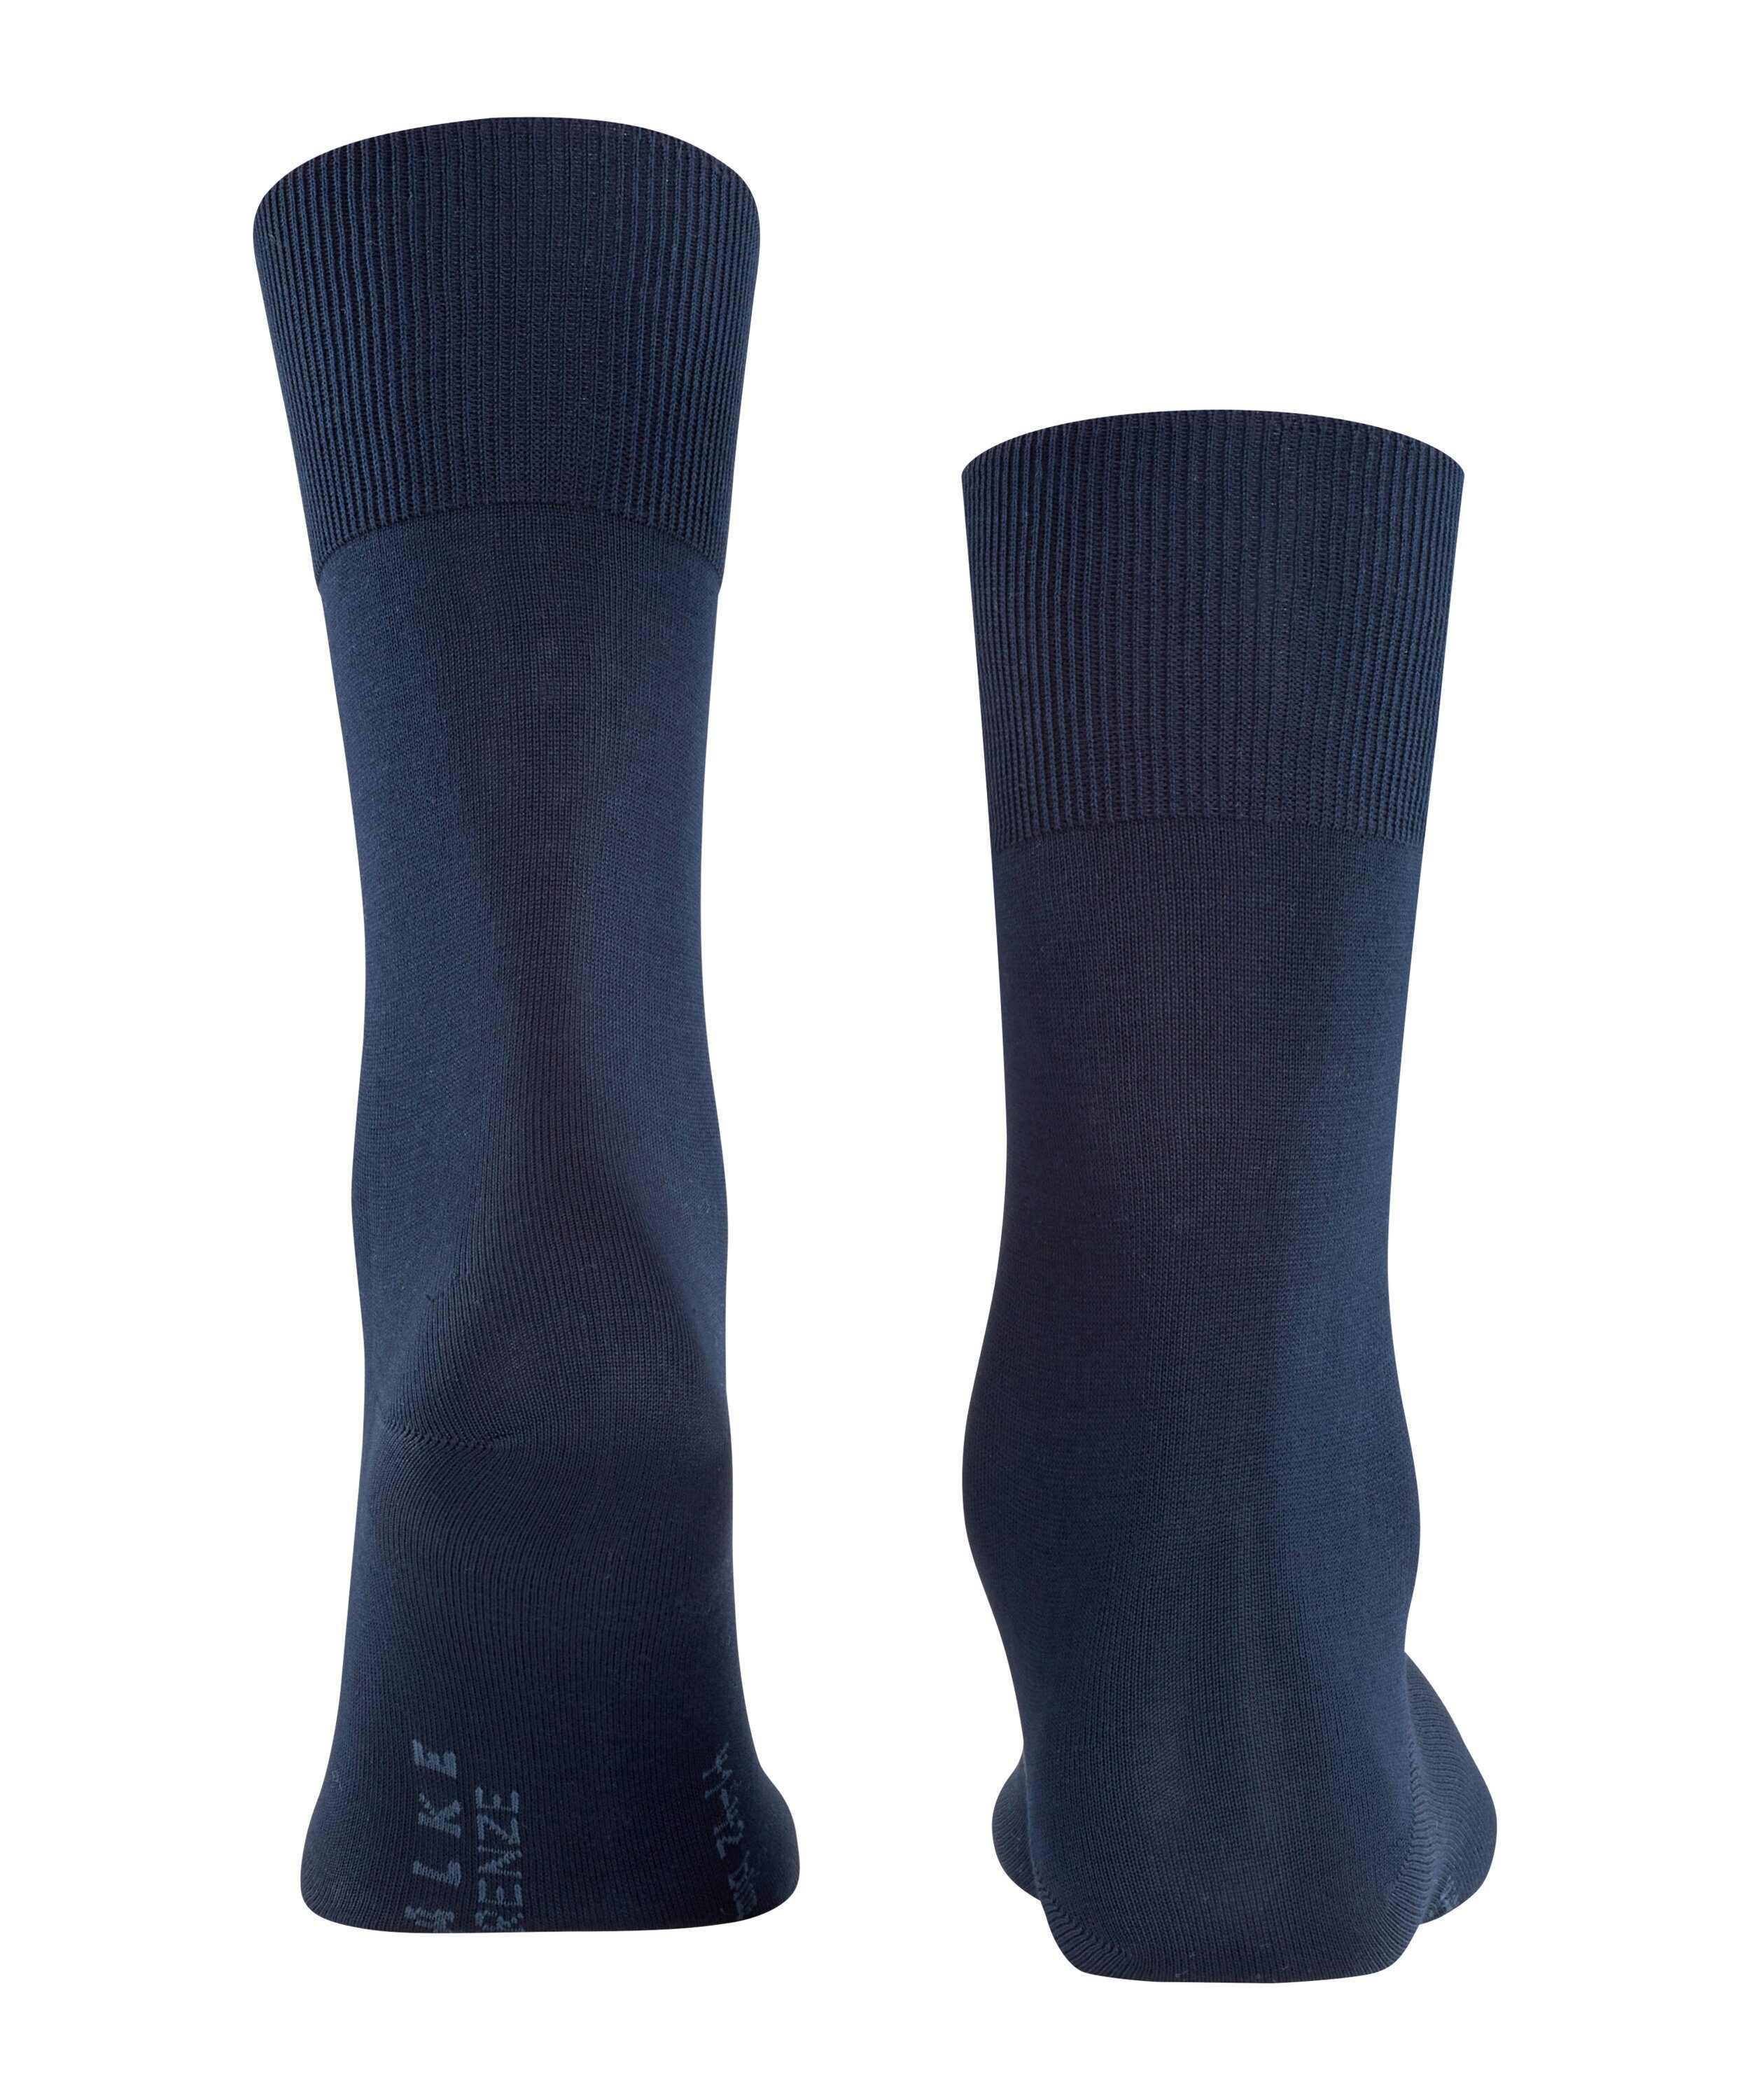 (6370) Firenze Socken FALKE navy dark (1-Paar)